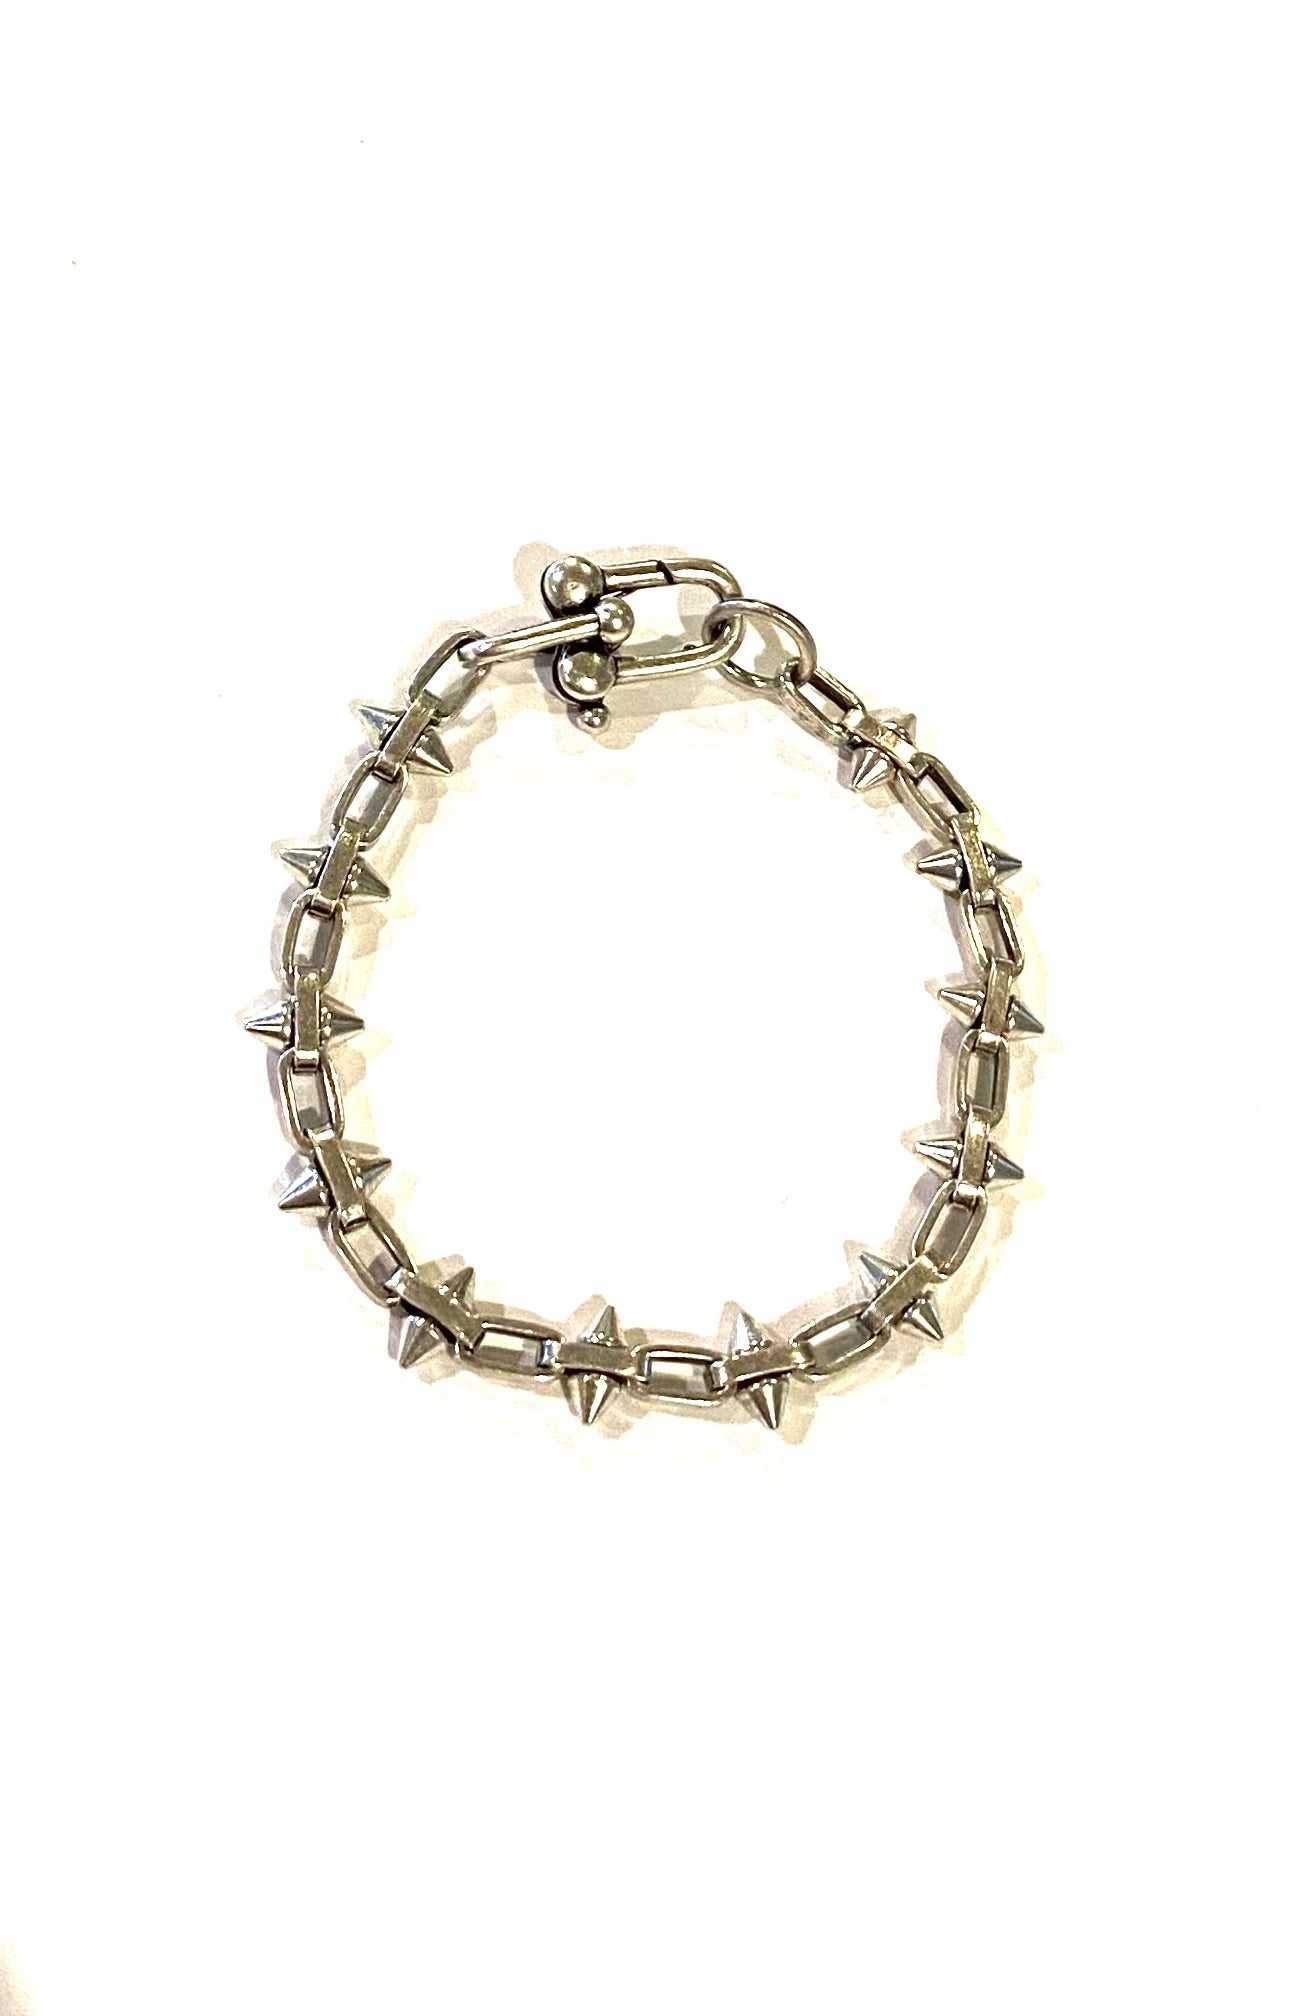 Punk Bracelet-Antique silver spike bracelet